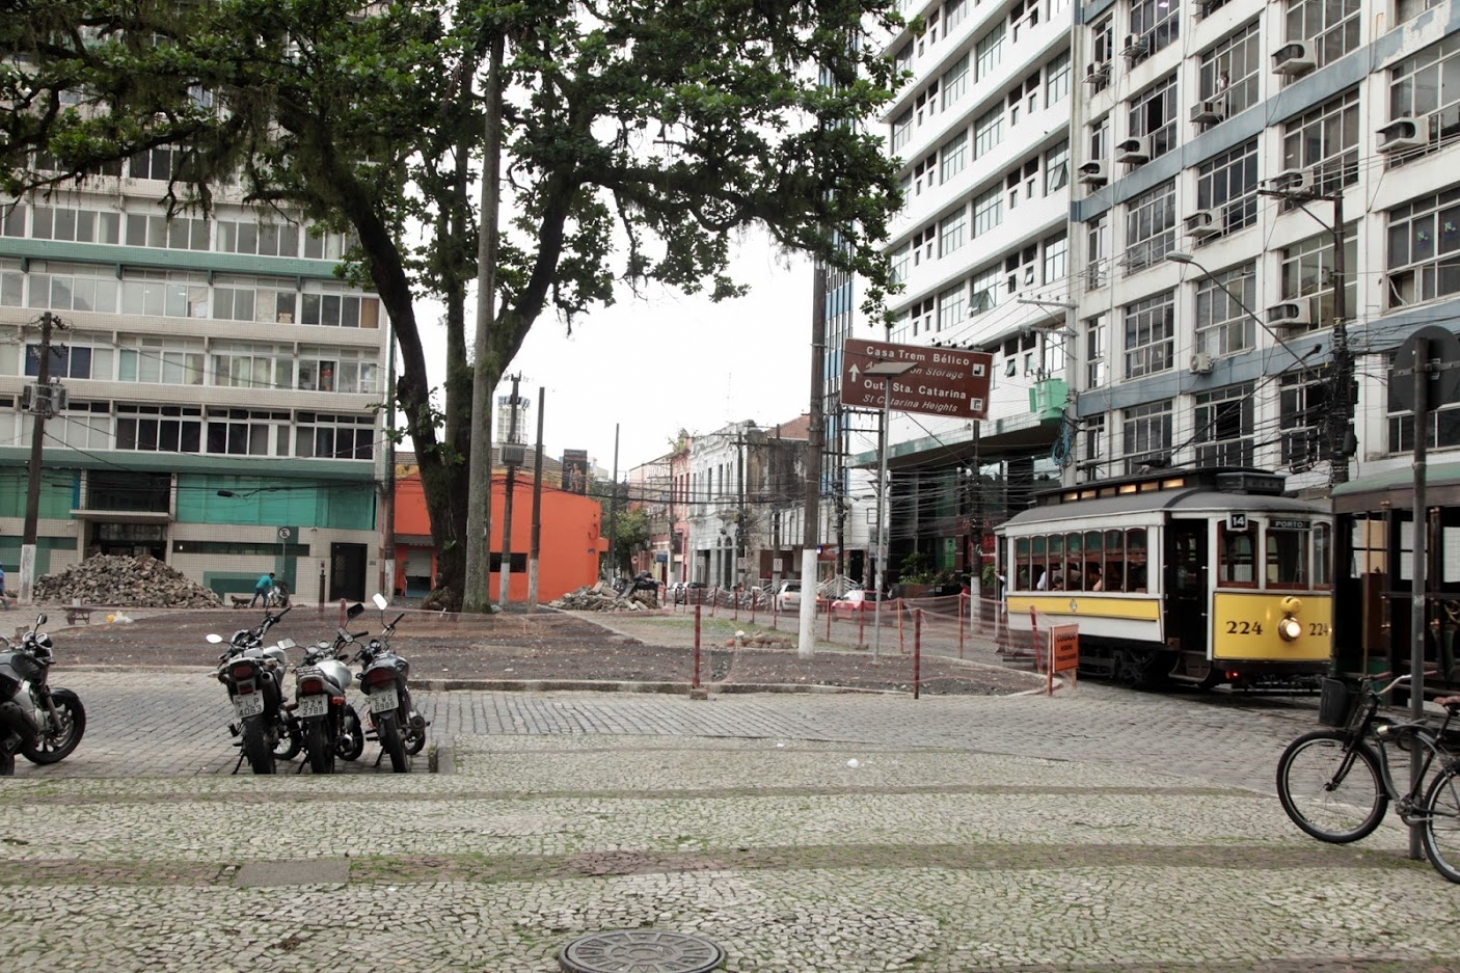 Reurbanização vai melhorar acessibilidade na Praça da República em Santos | Jornal da Orla